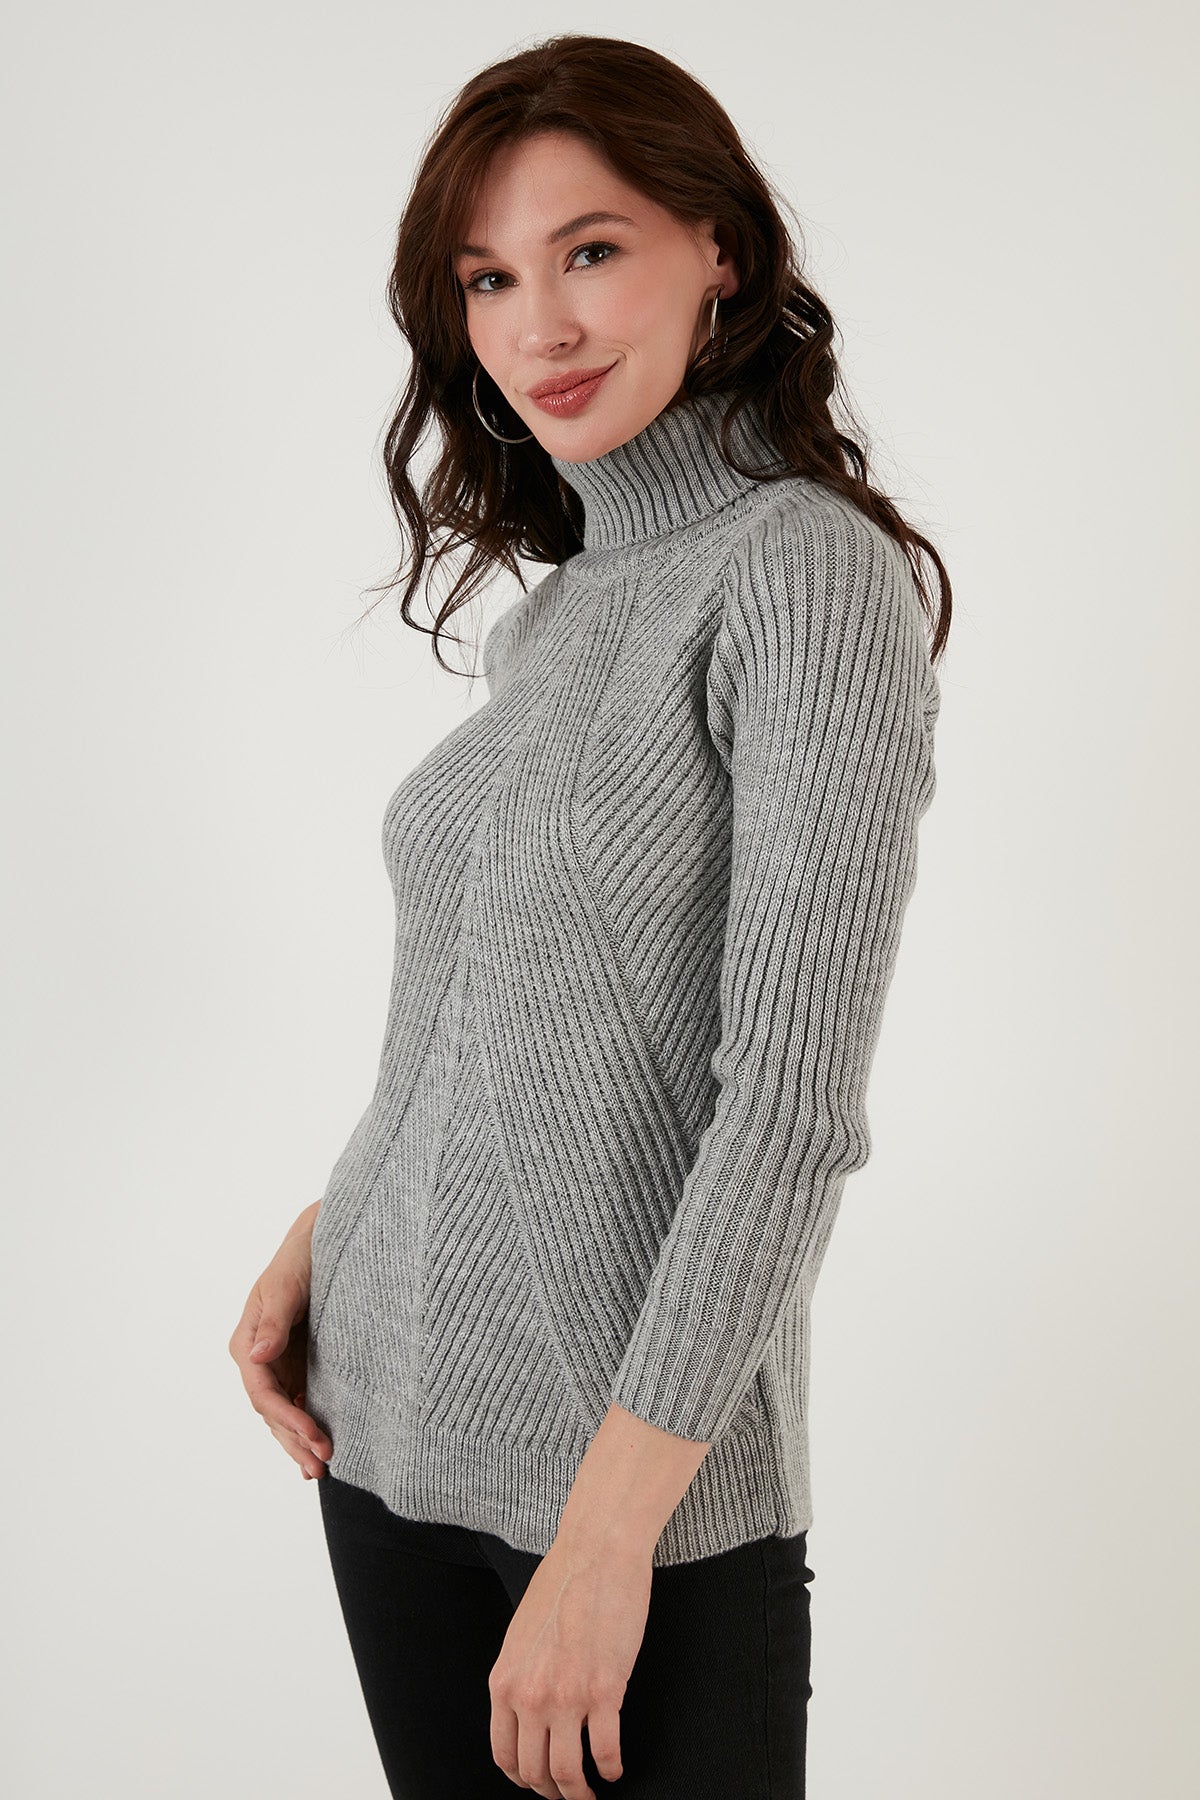 Lela Turtleneck Knitted Long Knitwear Women's Sweater - Light Stone